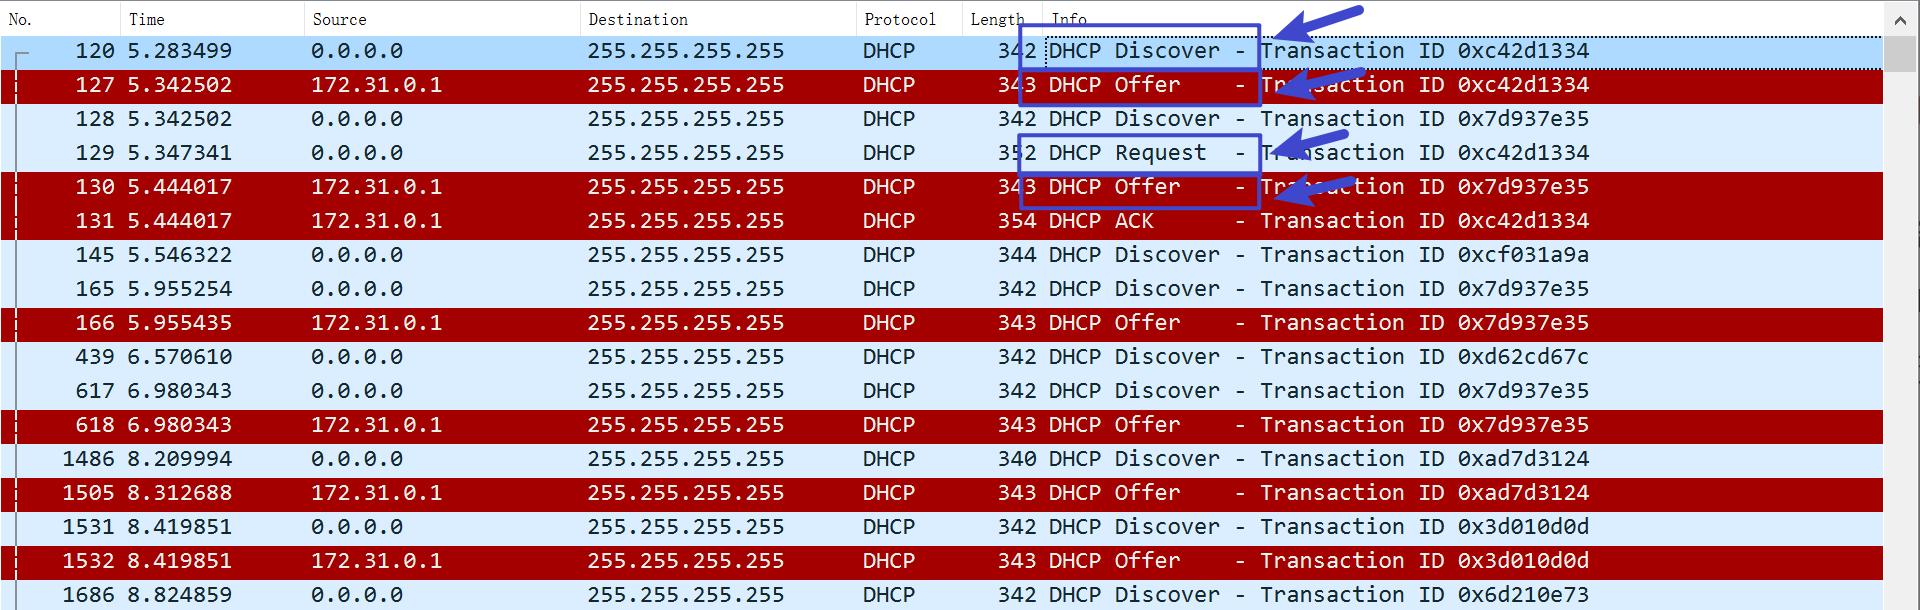 一次抓包到的 DHCP 地址分配过程, 所有包都使用广播发送, 有 Transaction ID 用于区分